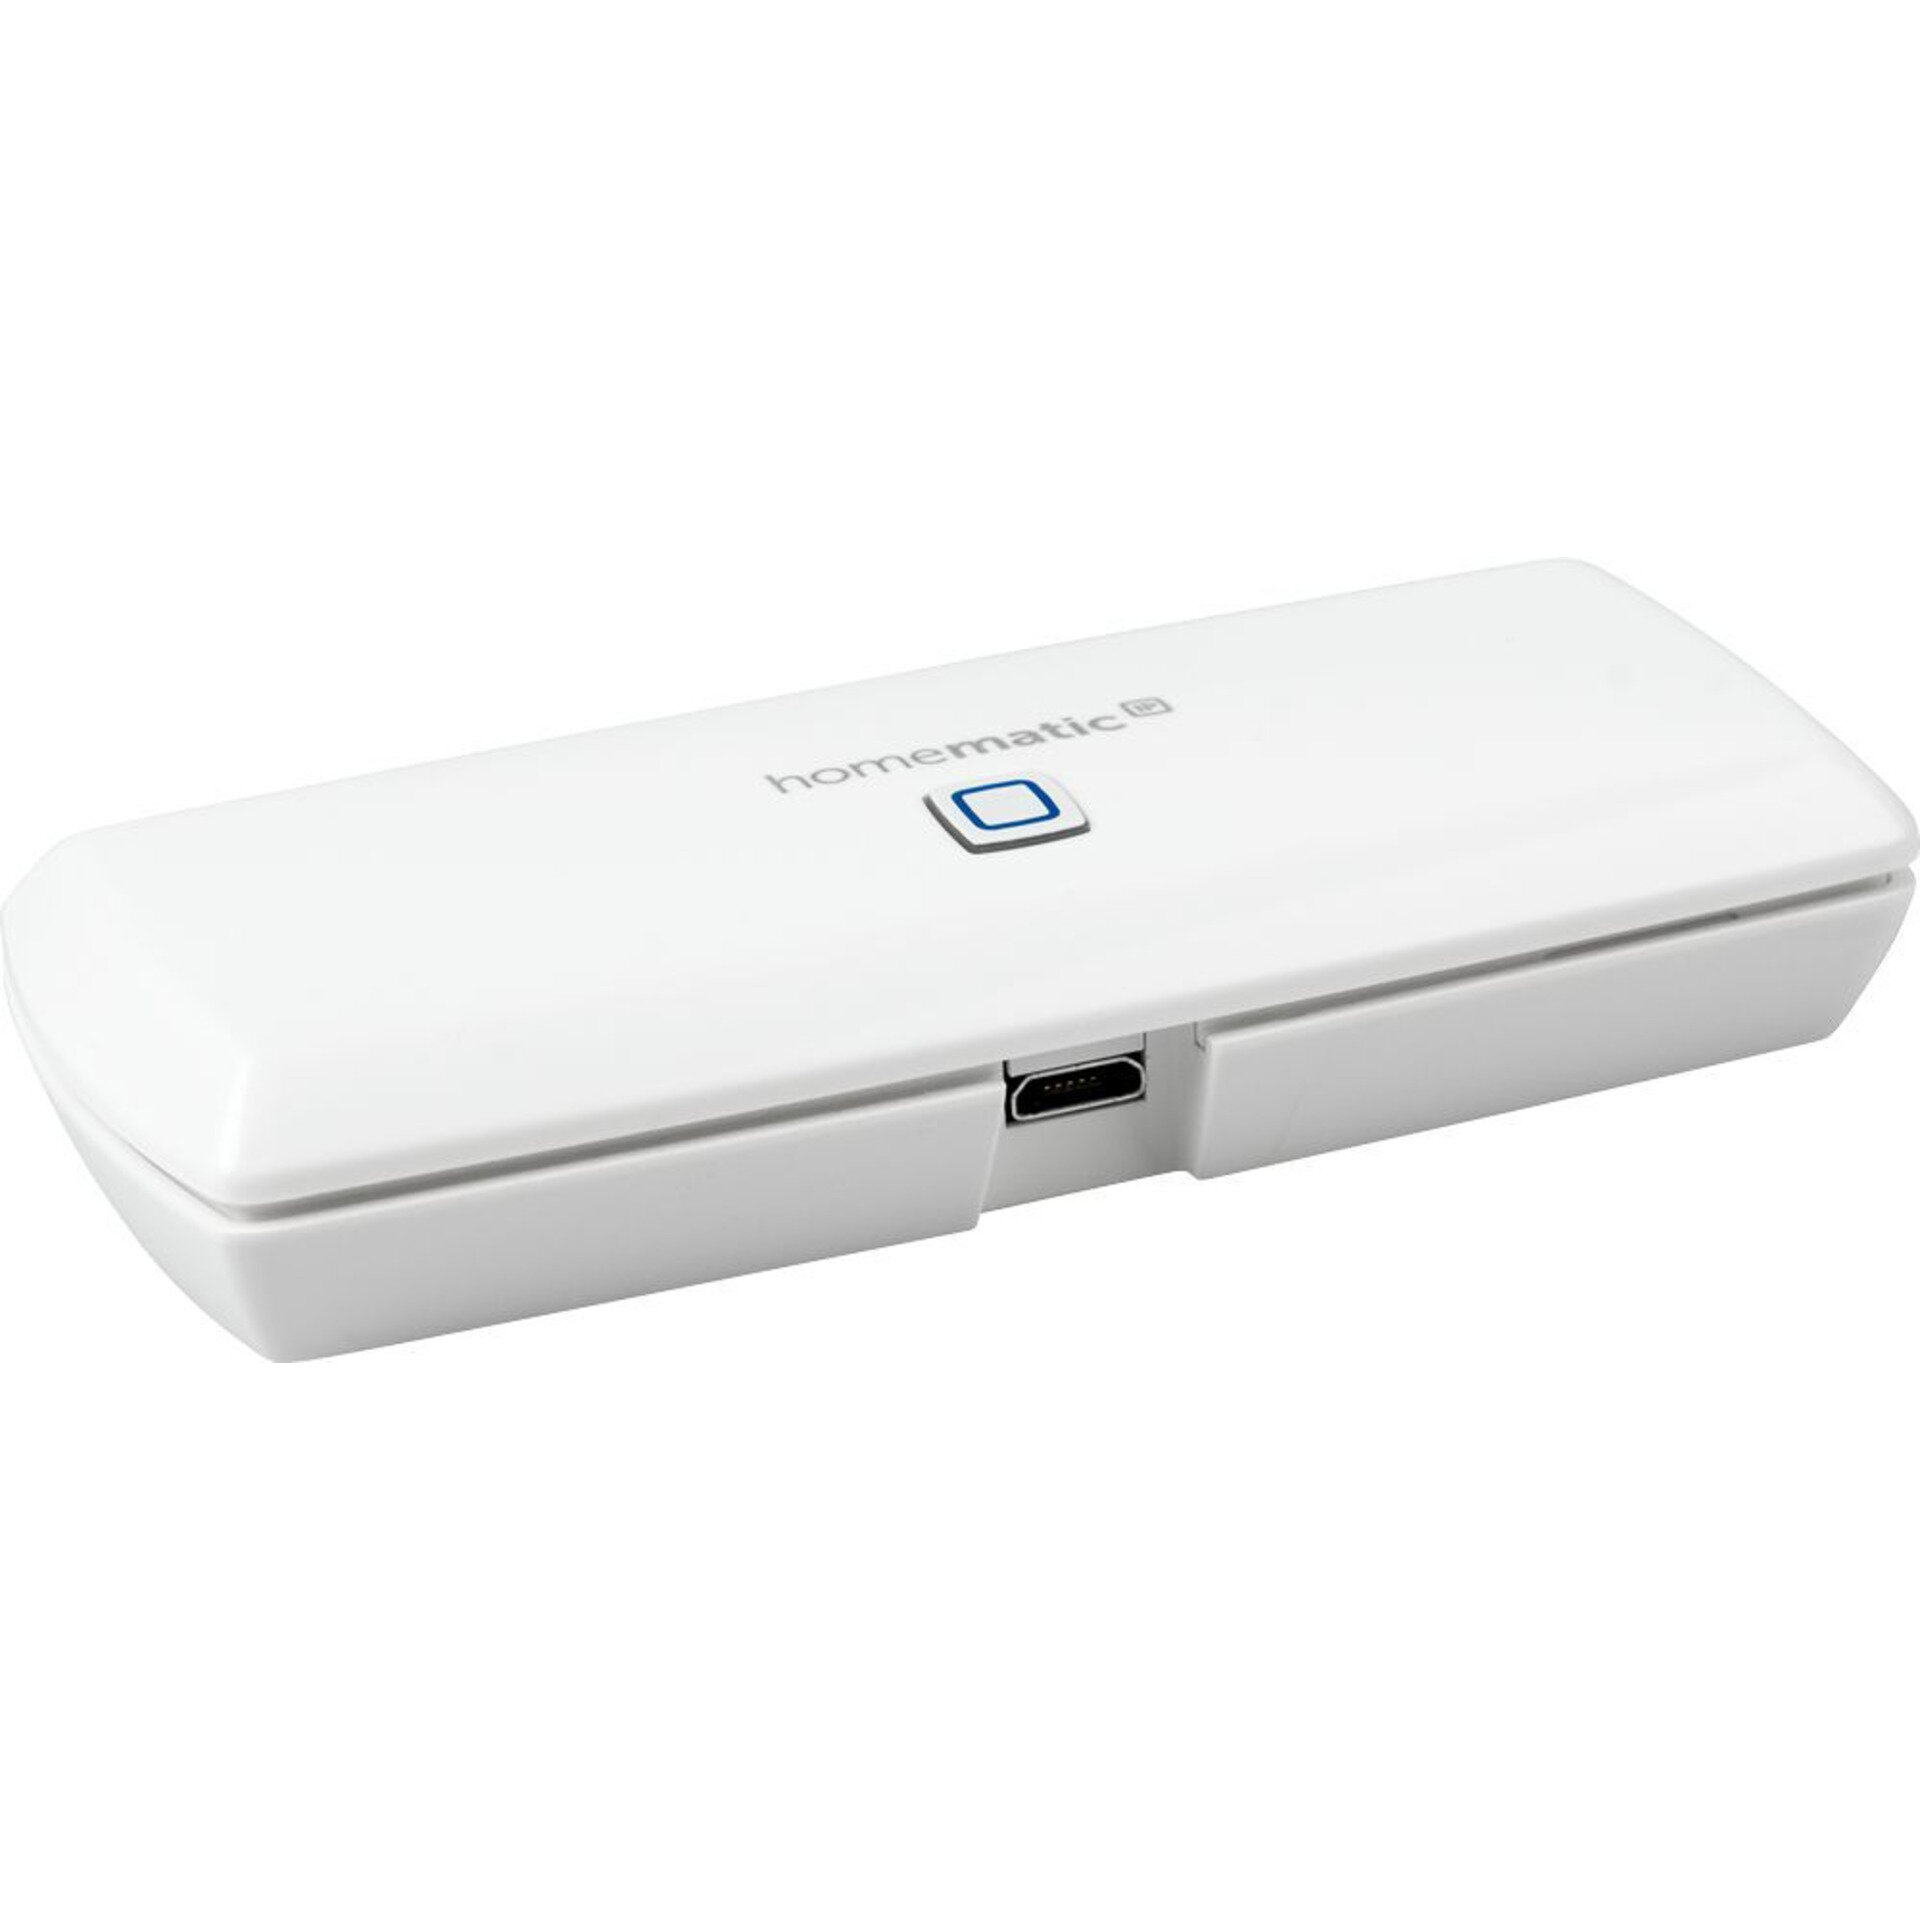 Homematic IP WLAN Access Point-Безжична Точка за достъп с WI-FI-централа на Smart Home